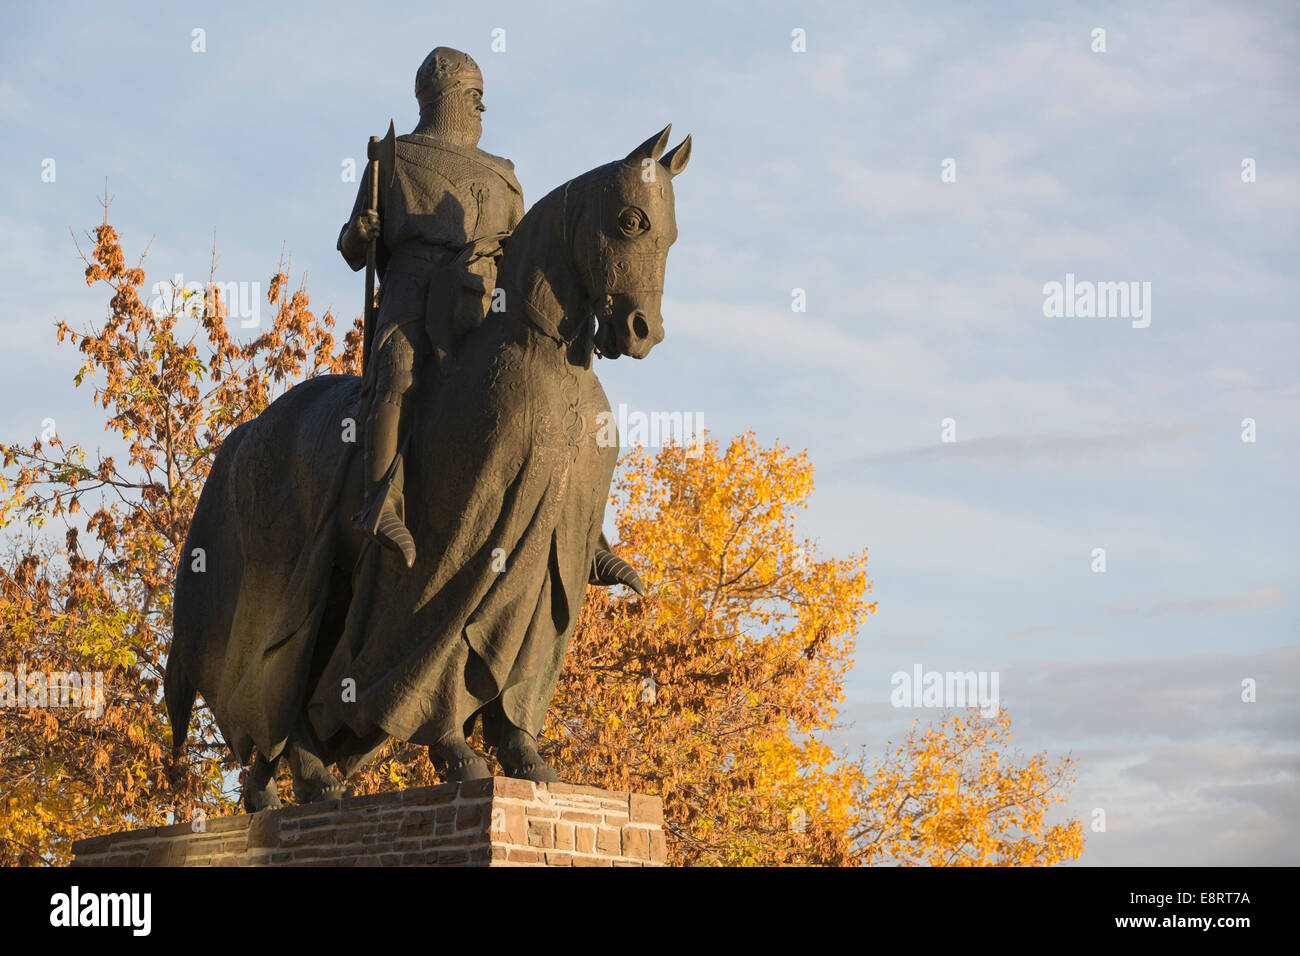 Statua di bronzo di Robert Bruce Re di Scozia a cavallo, commemorando la battaglia di Bannockburn. Sia l'uomo che il cavallo indossano un'armatura per il corpo. Foto Stock